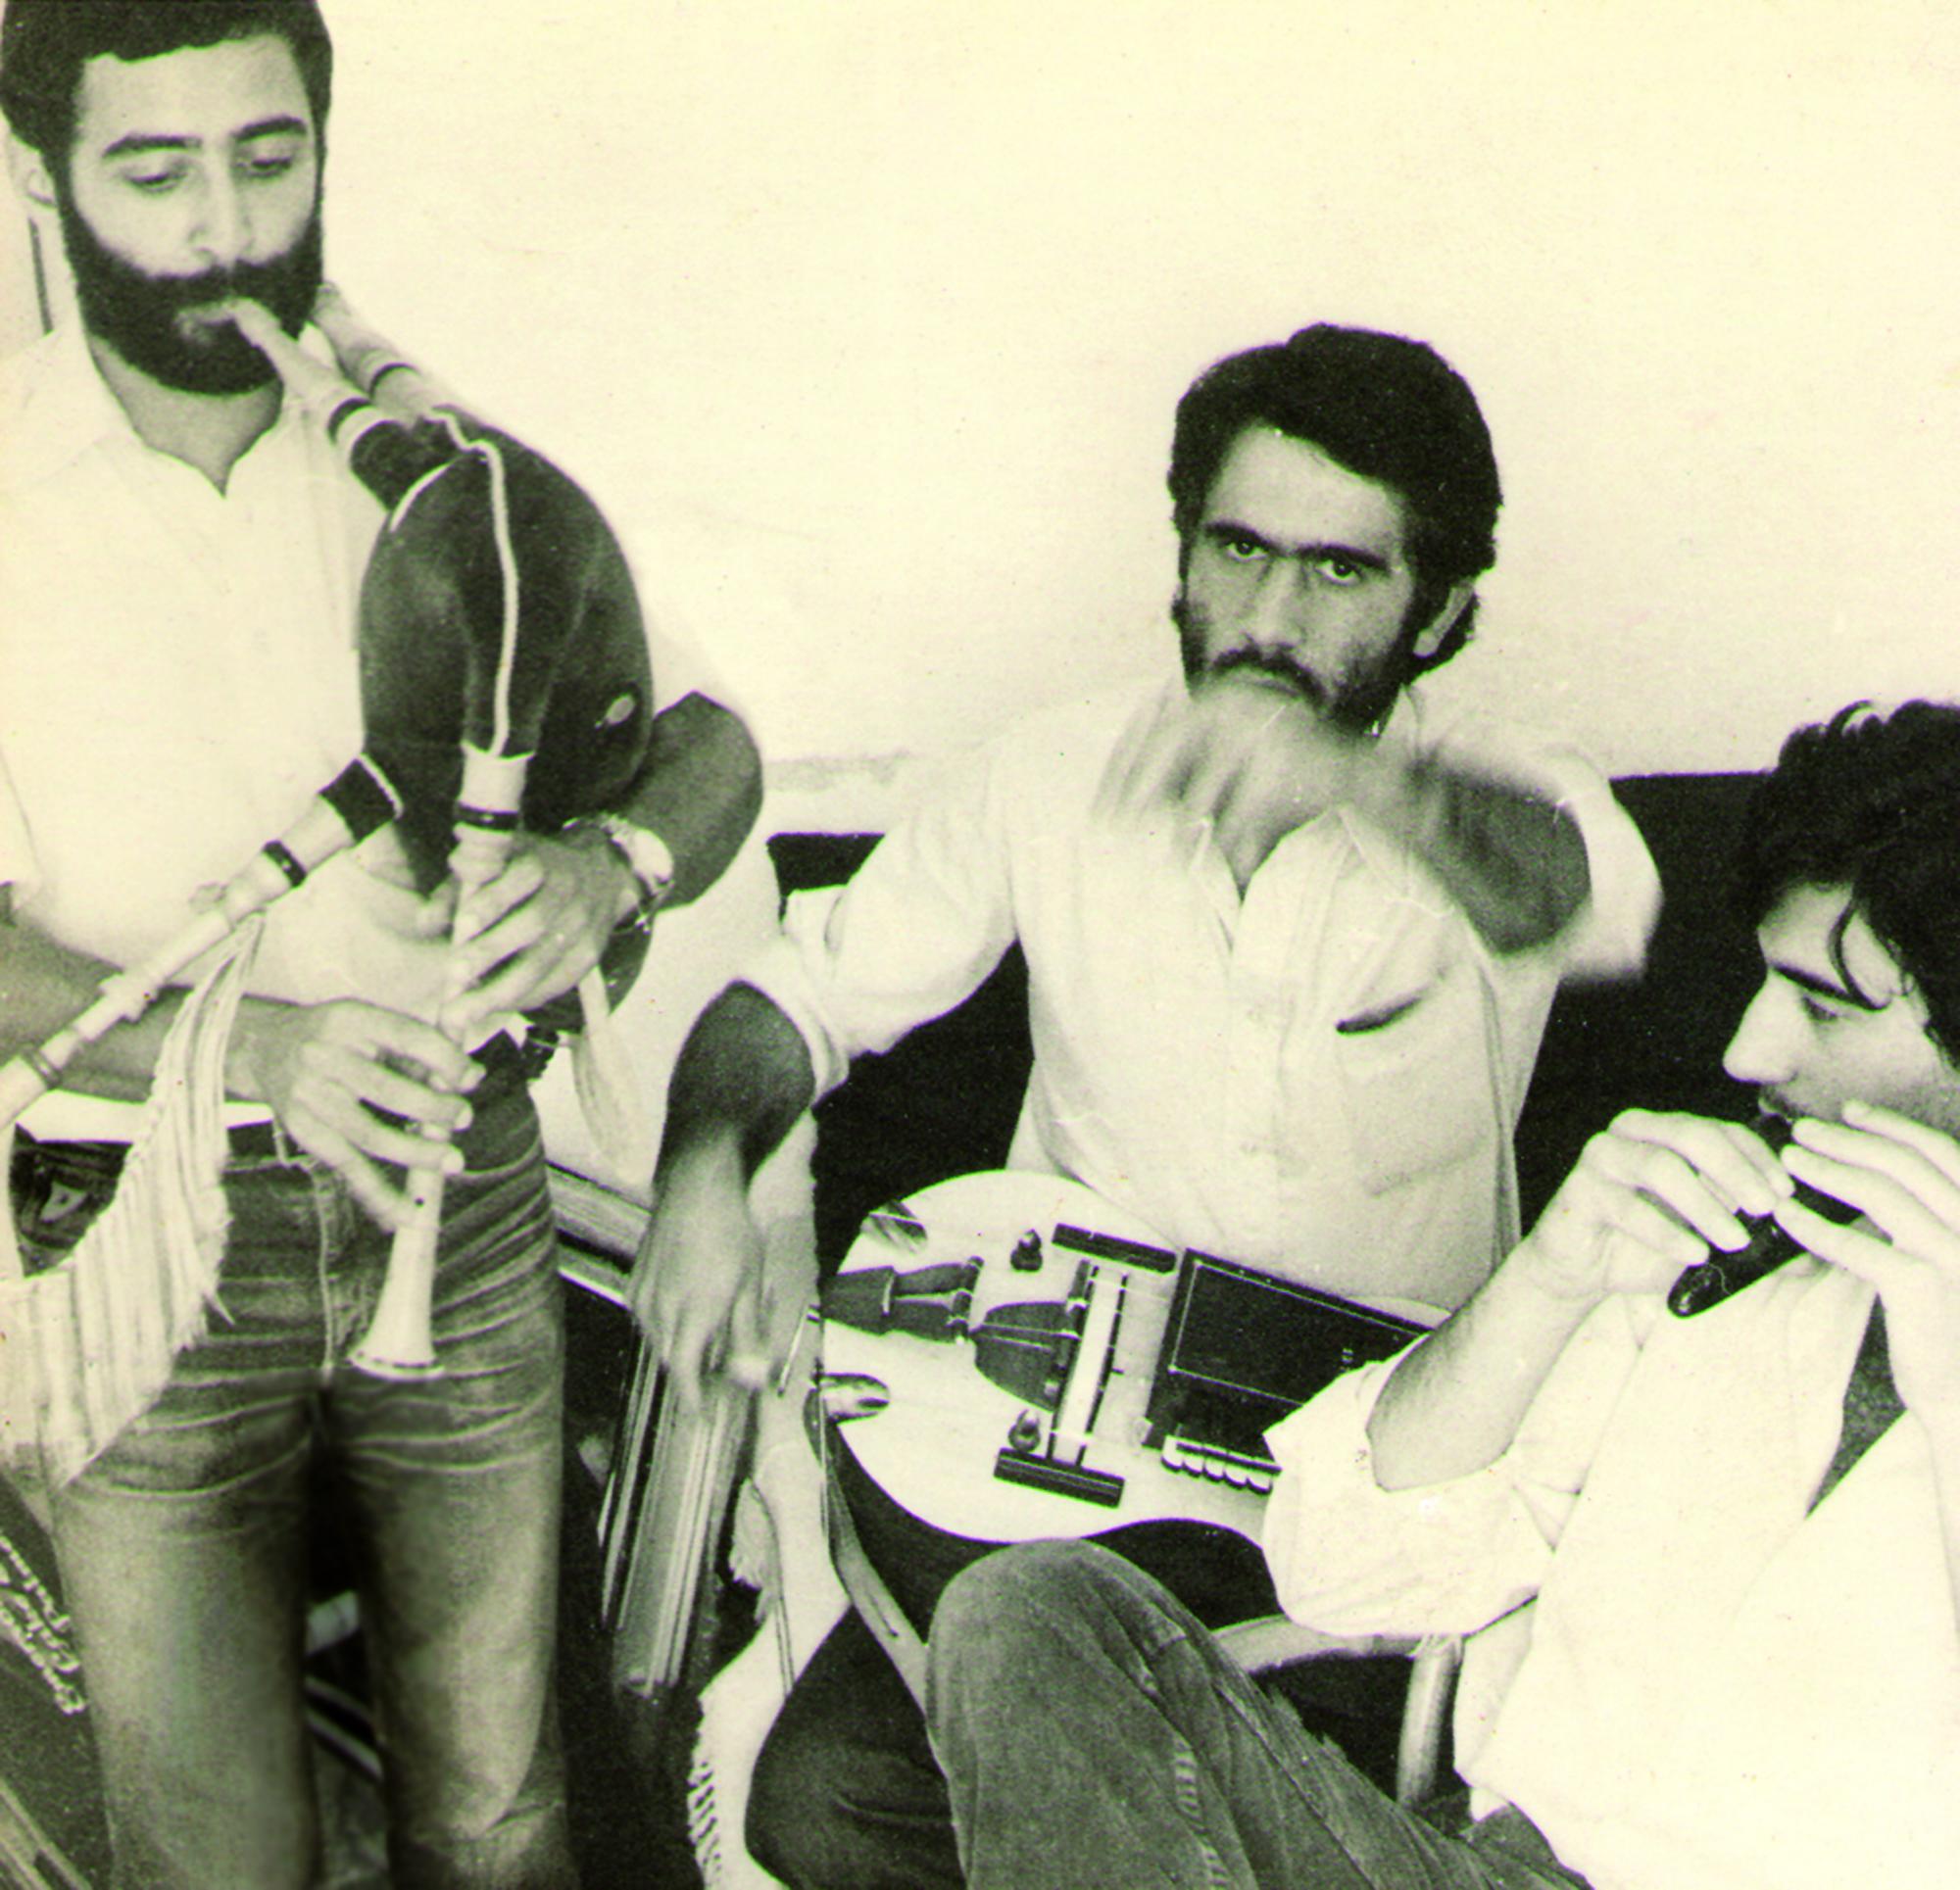 Pepe Ferreirós, Antón Seoane y Rodrigo Romaní en Mondariz en 1977